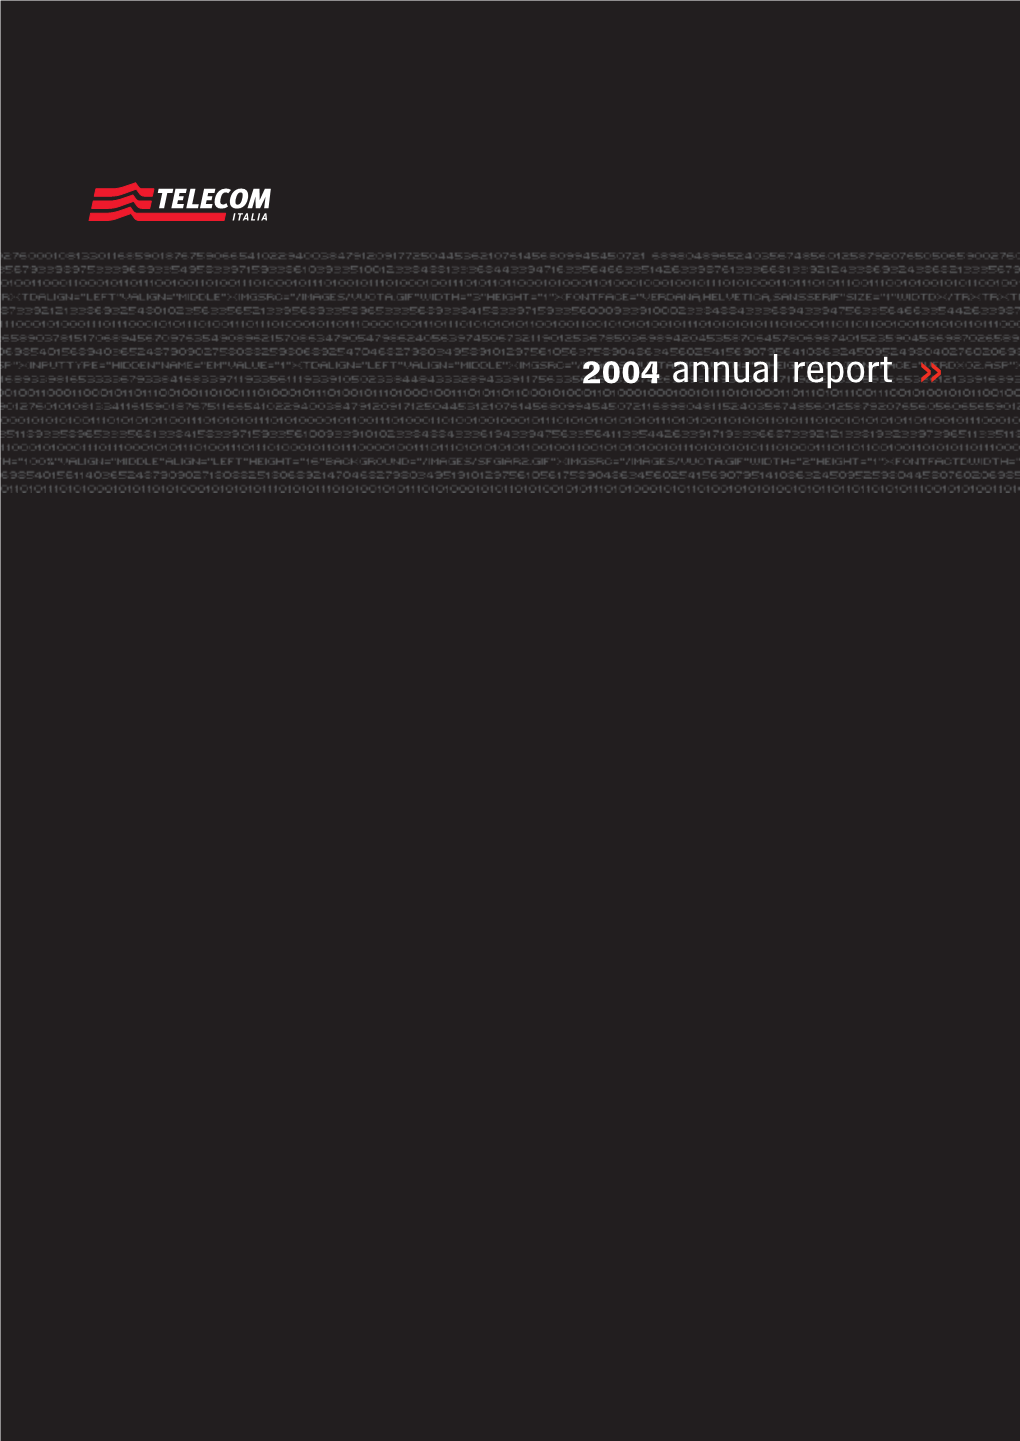 2004 Annual Report >> 2 0 0 4 a N N U a L R E P O R T > > ERRATA CORRIGE